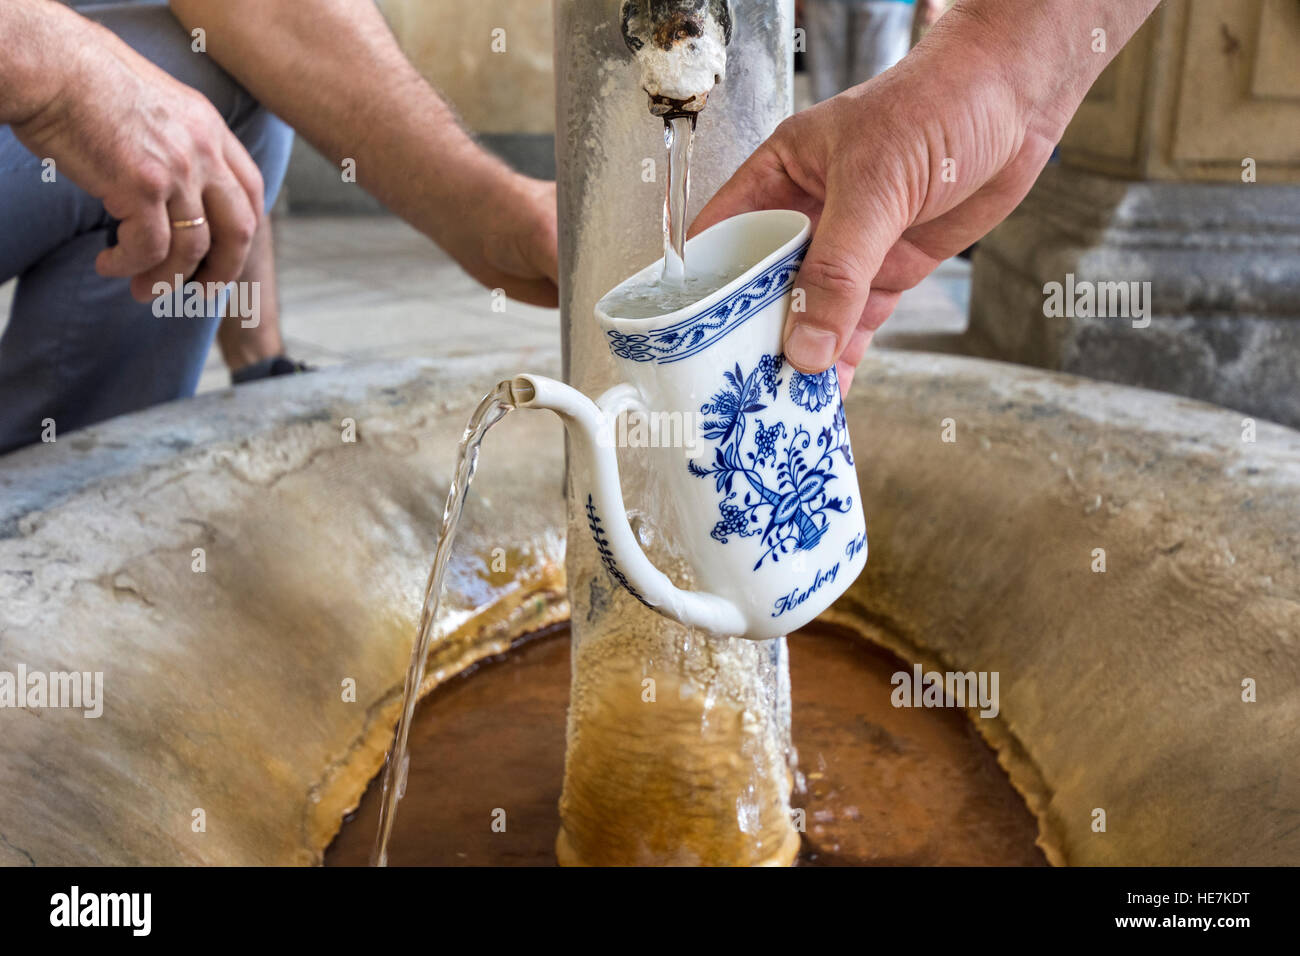 Remplir une tasse d'eau de source thermale de Karlovy Vary, République Tchèque Banque D'Images